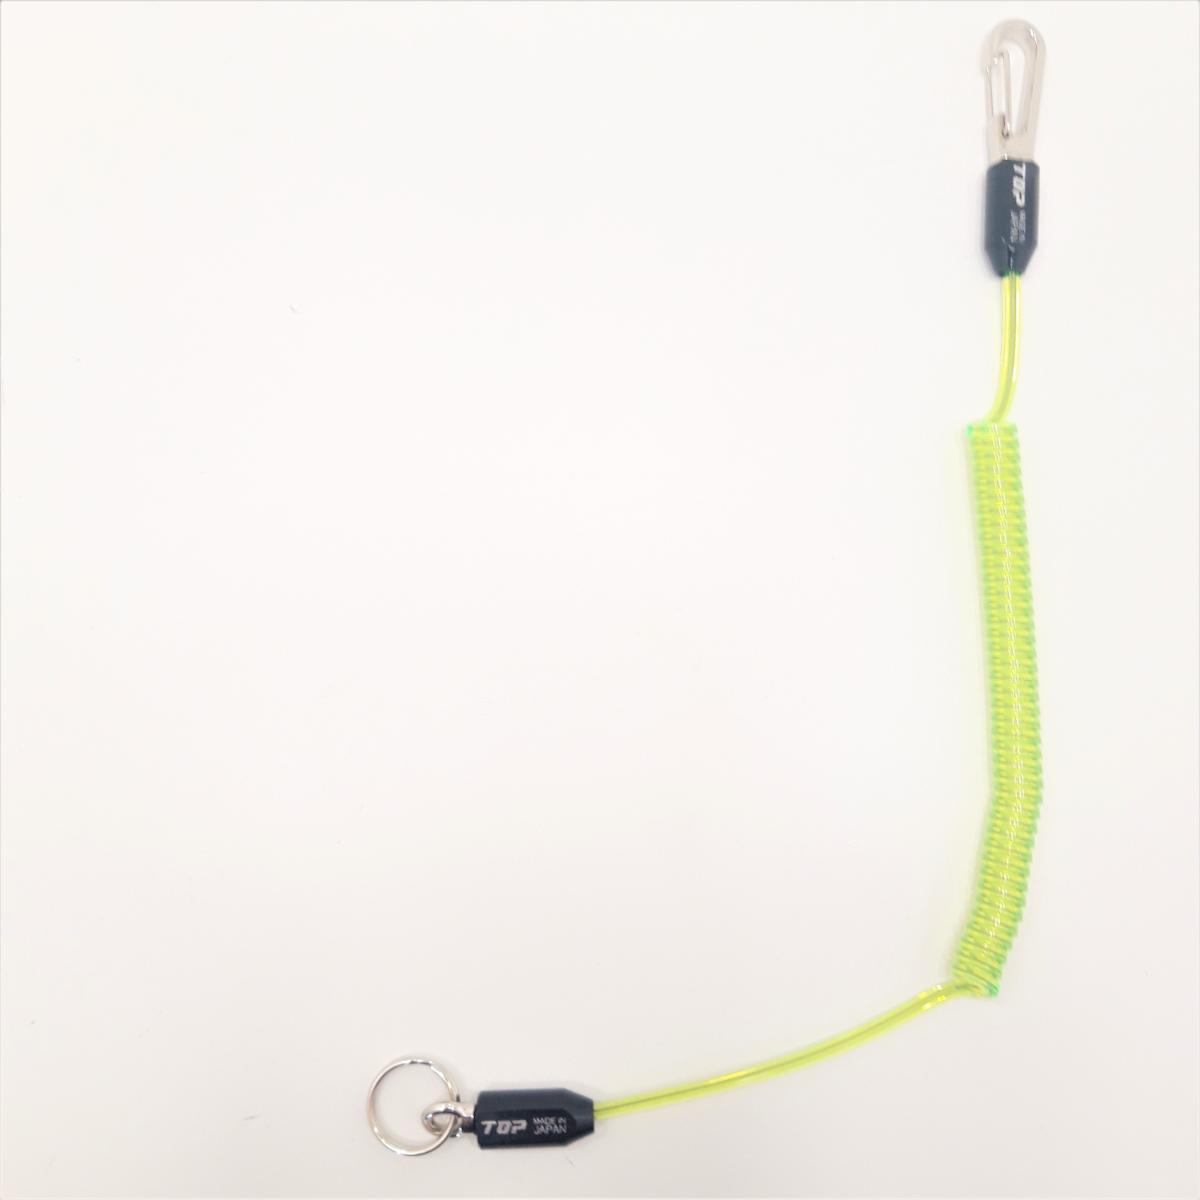 Cordons de sécurité (leash) pour vos outils, Couleur Jaune-Vert